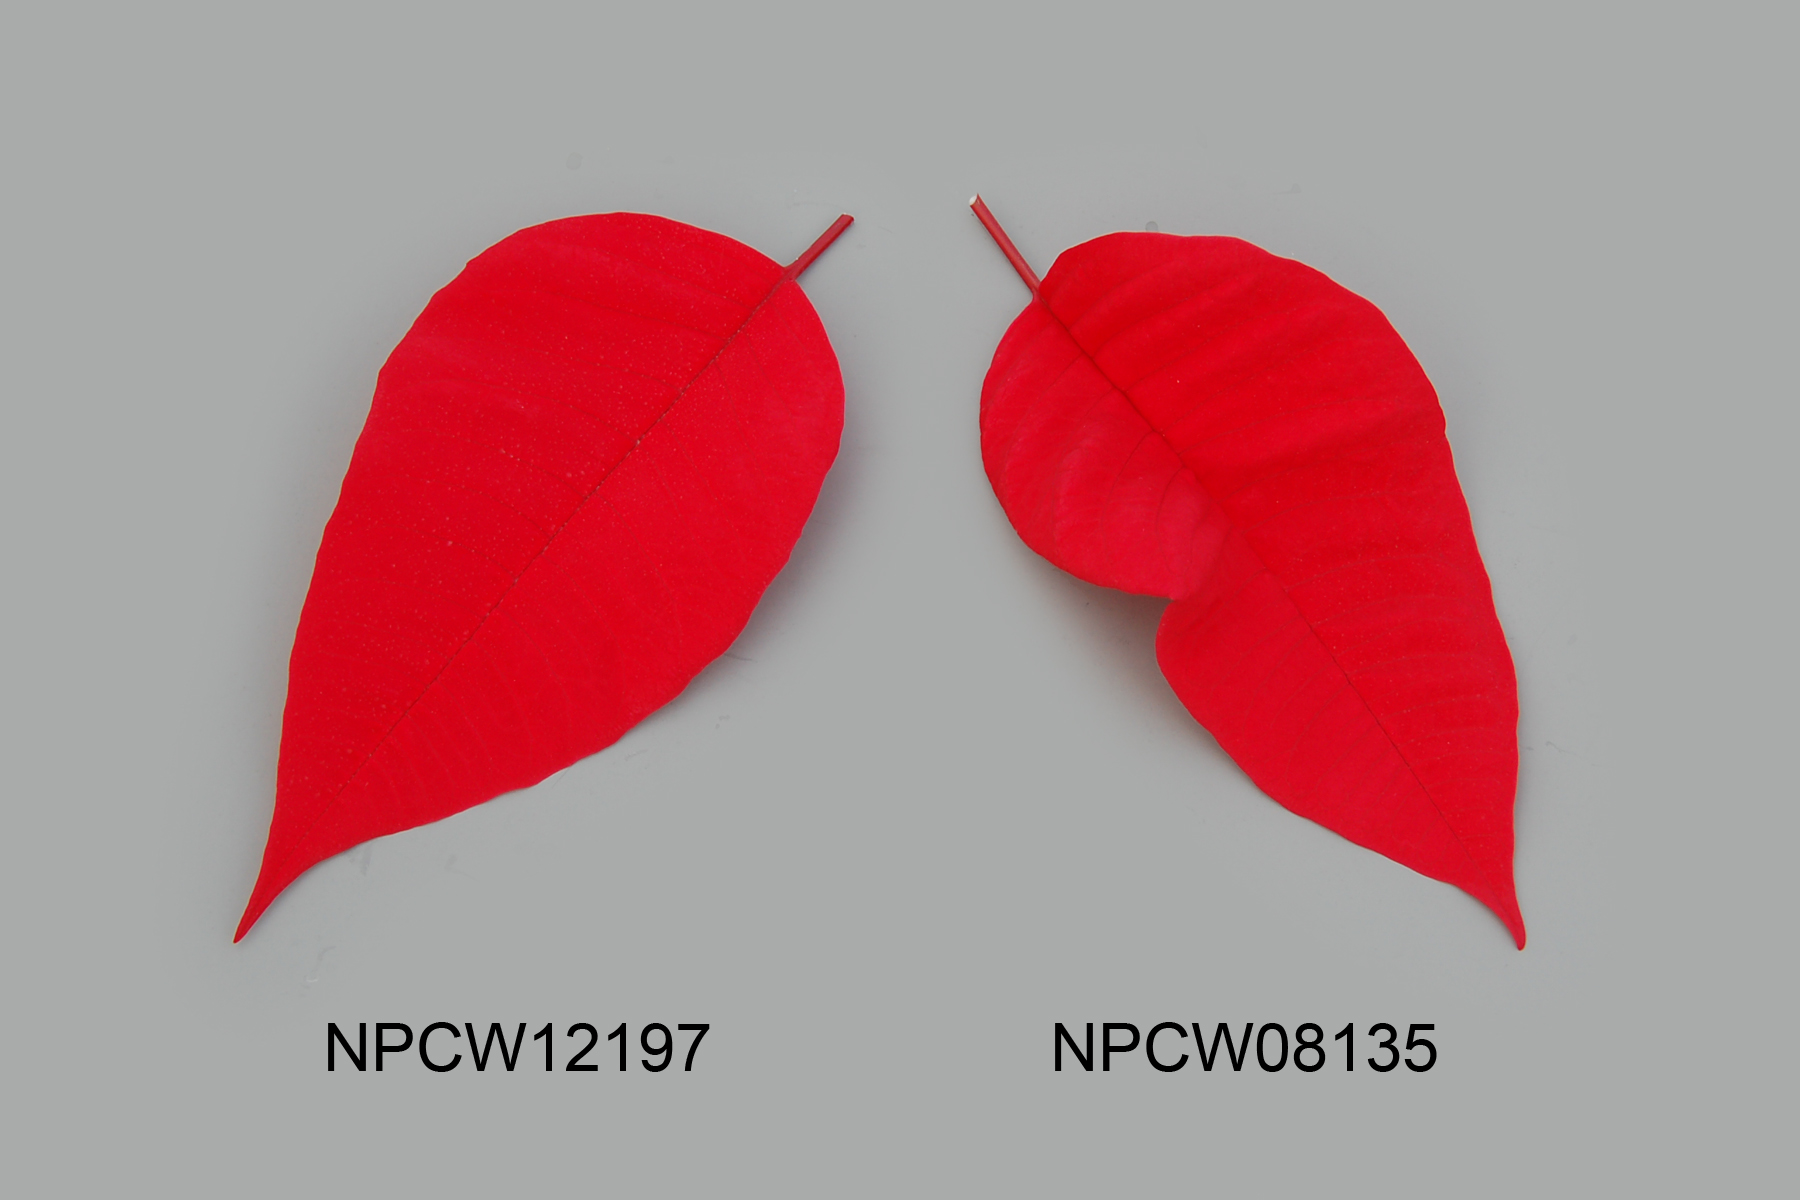 NPCW12197